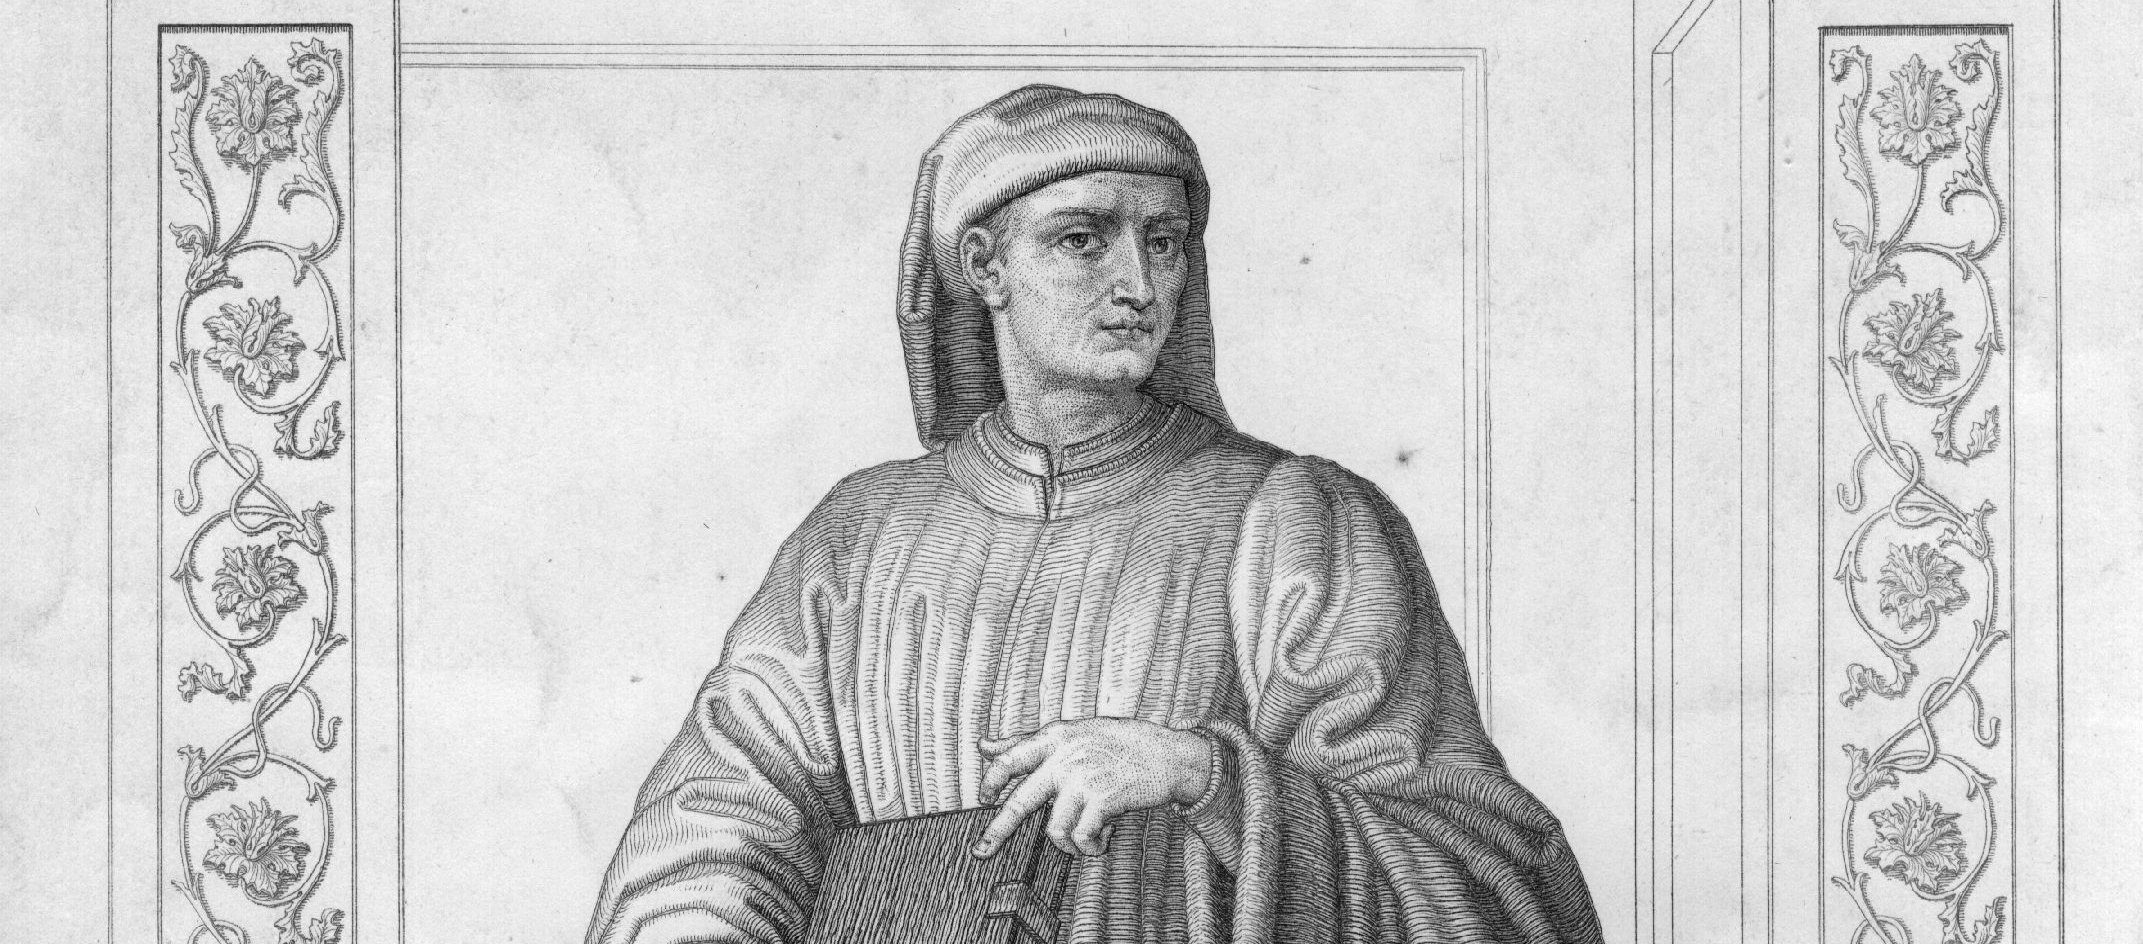 Giovanni Boccaccio (1313-1376), the Italian author of the Decameron.